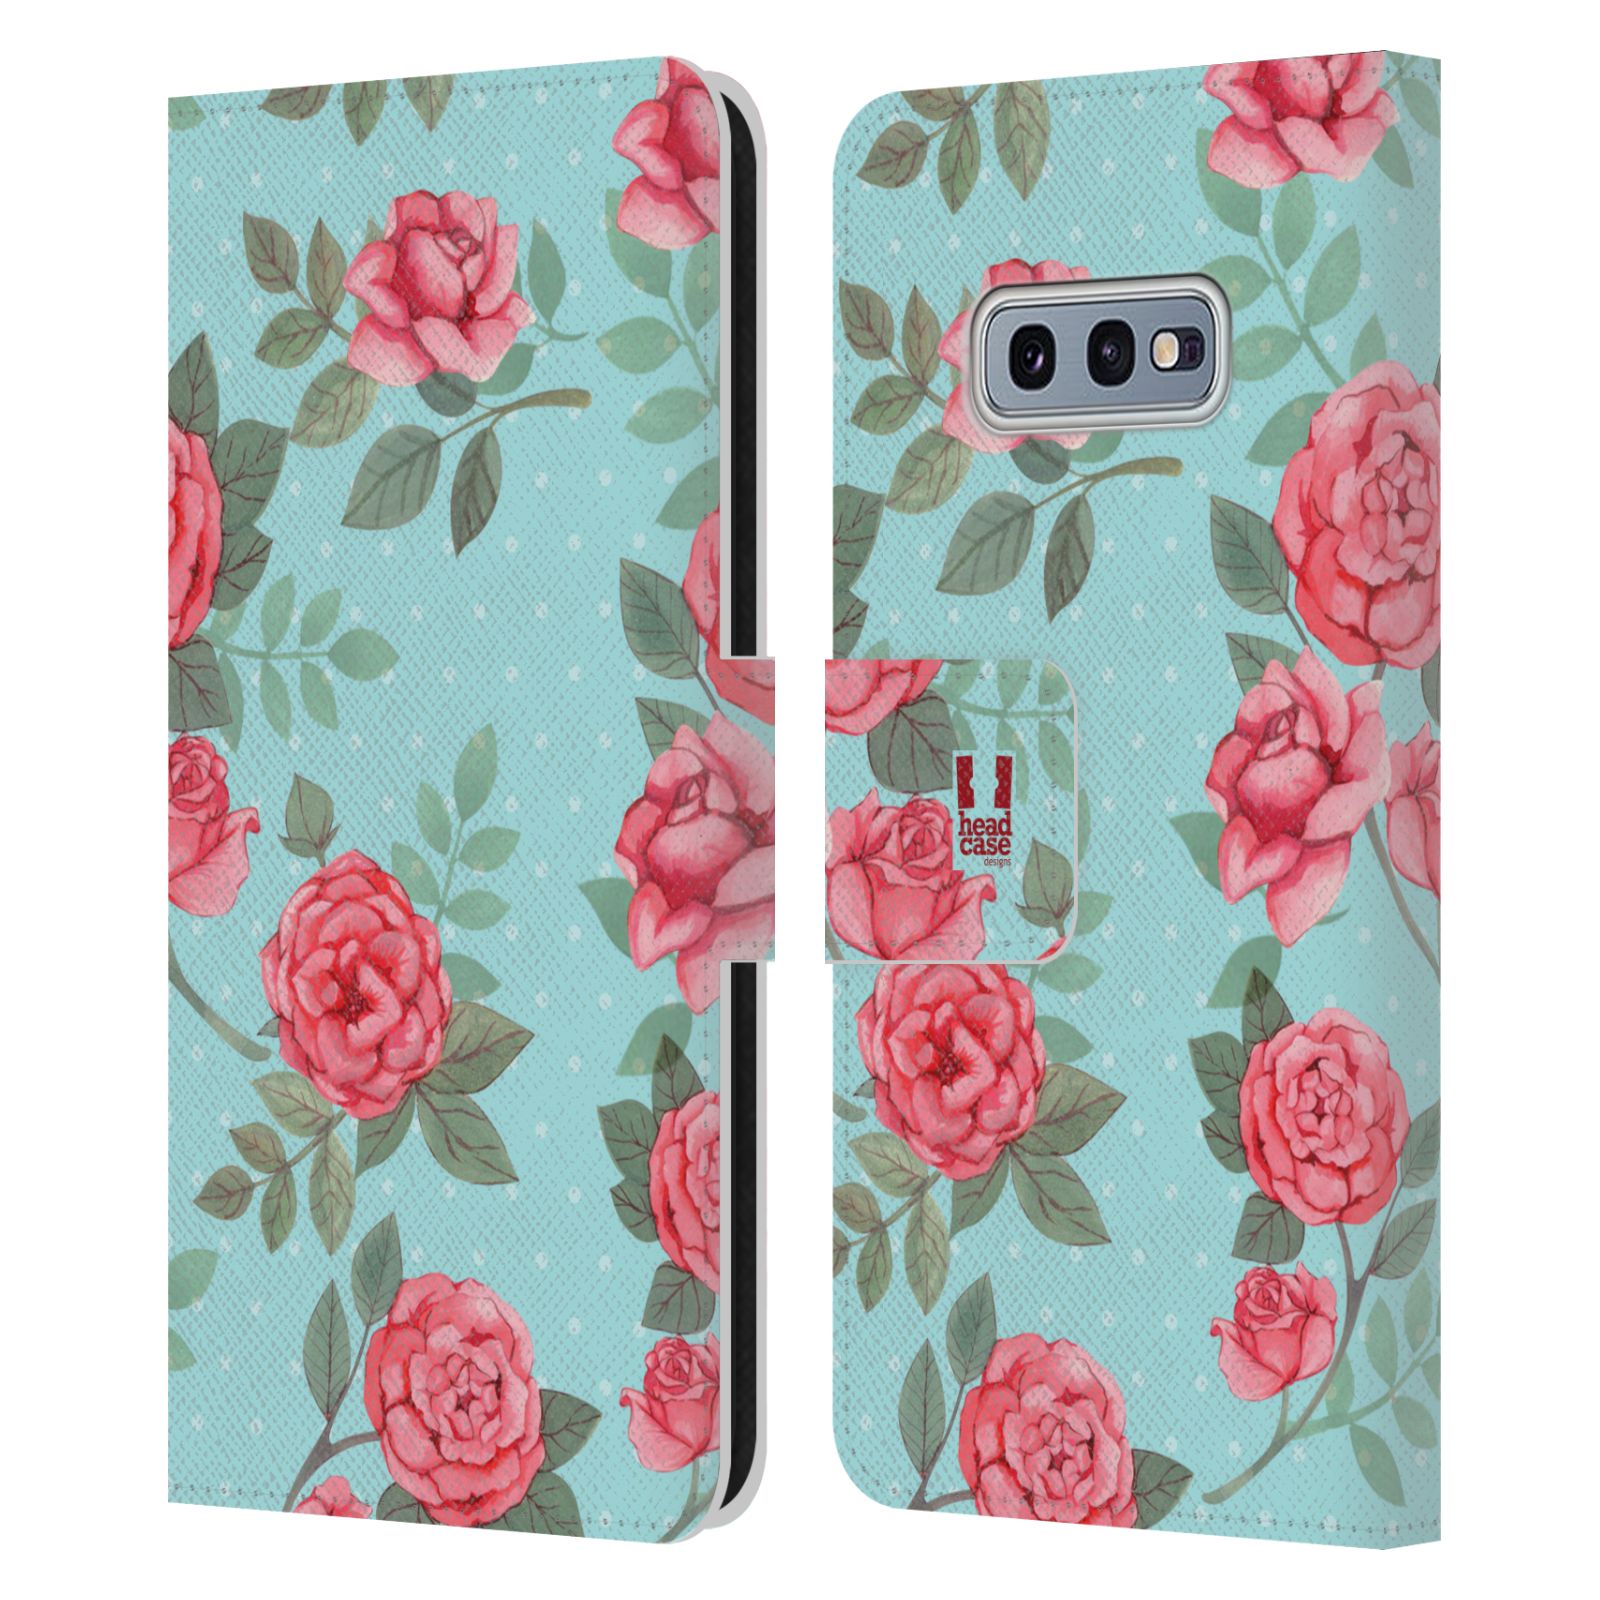 Pouzdro HEAD CASE na mobil Samsung Galaxy S10e romantické květy velké růže modrá a růžová